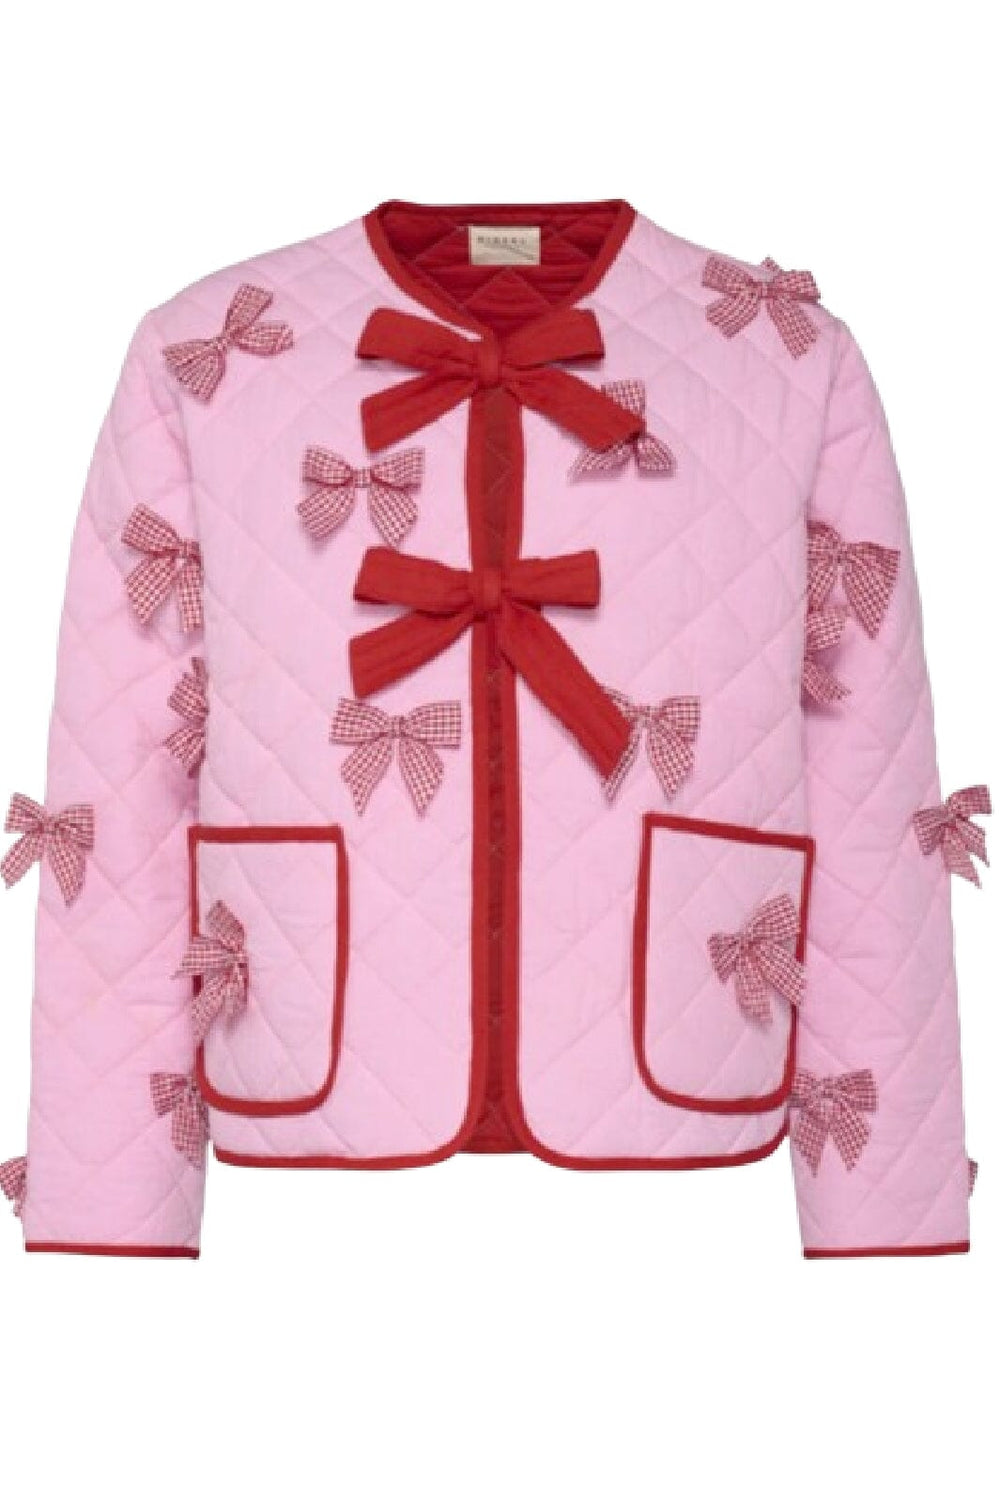 Forudbestilling - Sissel Edelbo - Penny Jacket SE 1405 - Prism Pink & Red Jakker 